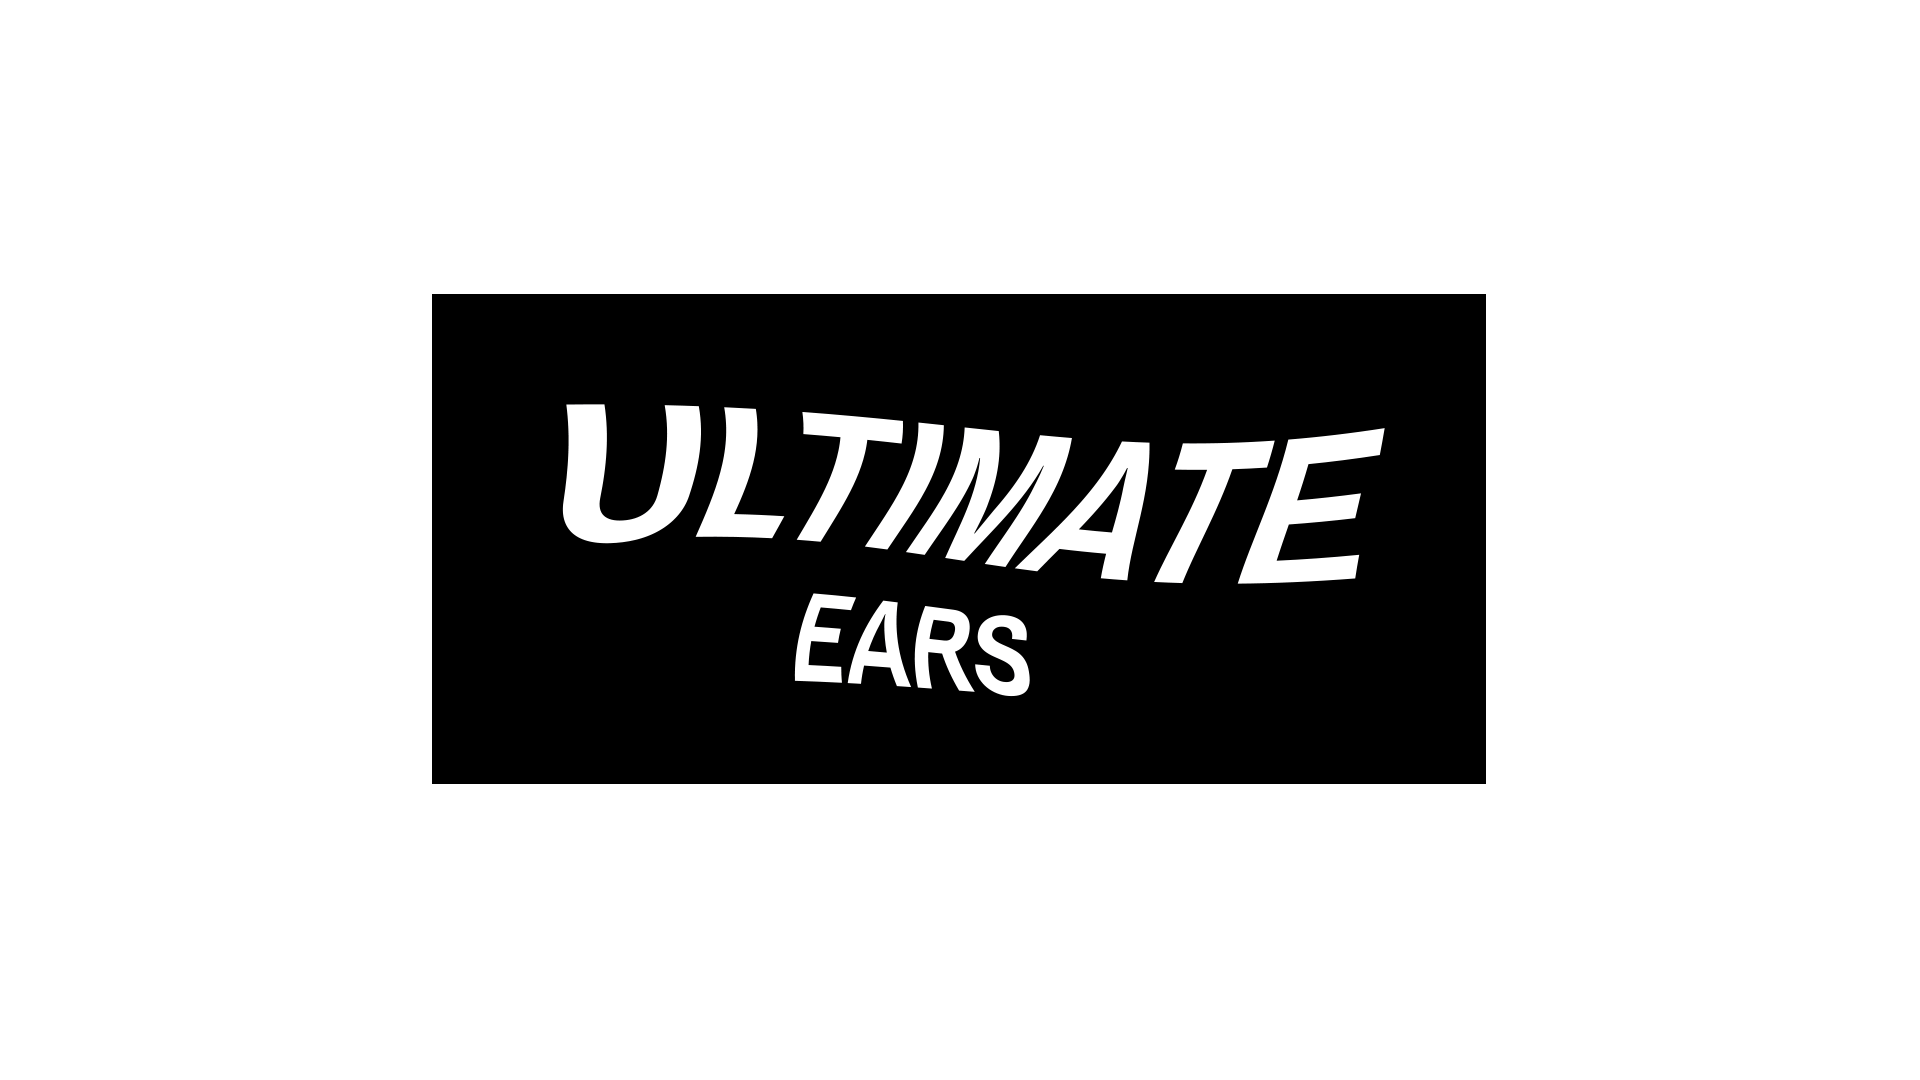 James_Trump_Branding_Ultimate_Ears_logo